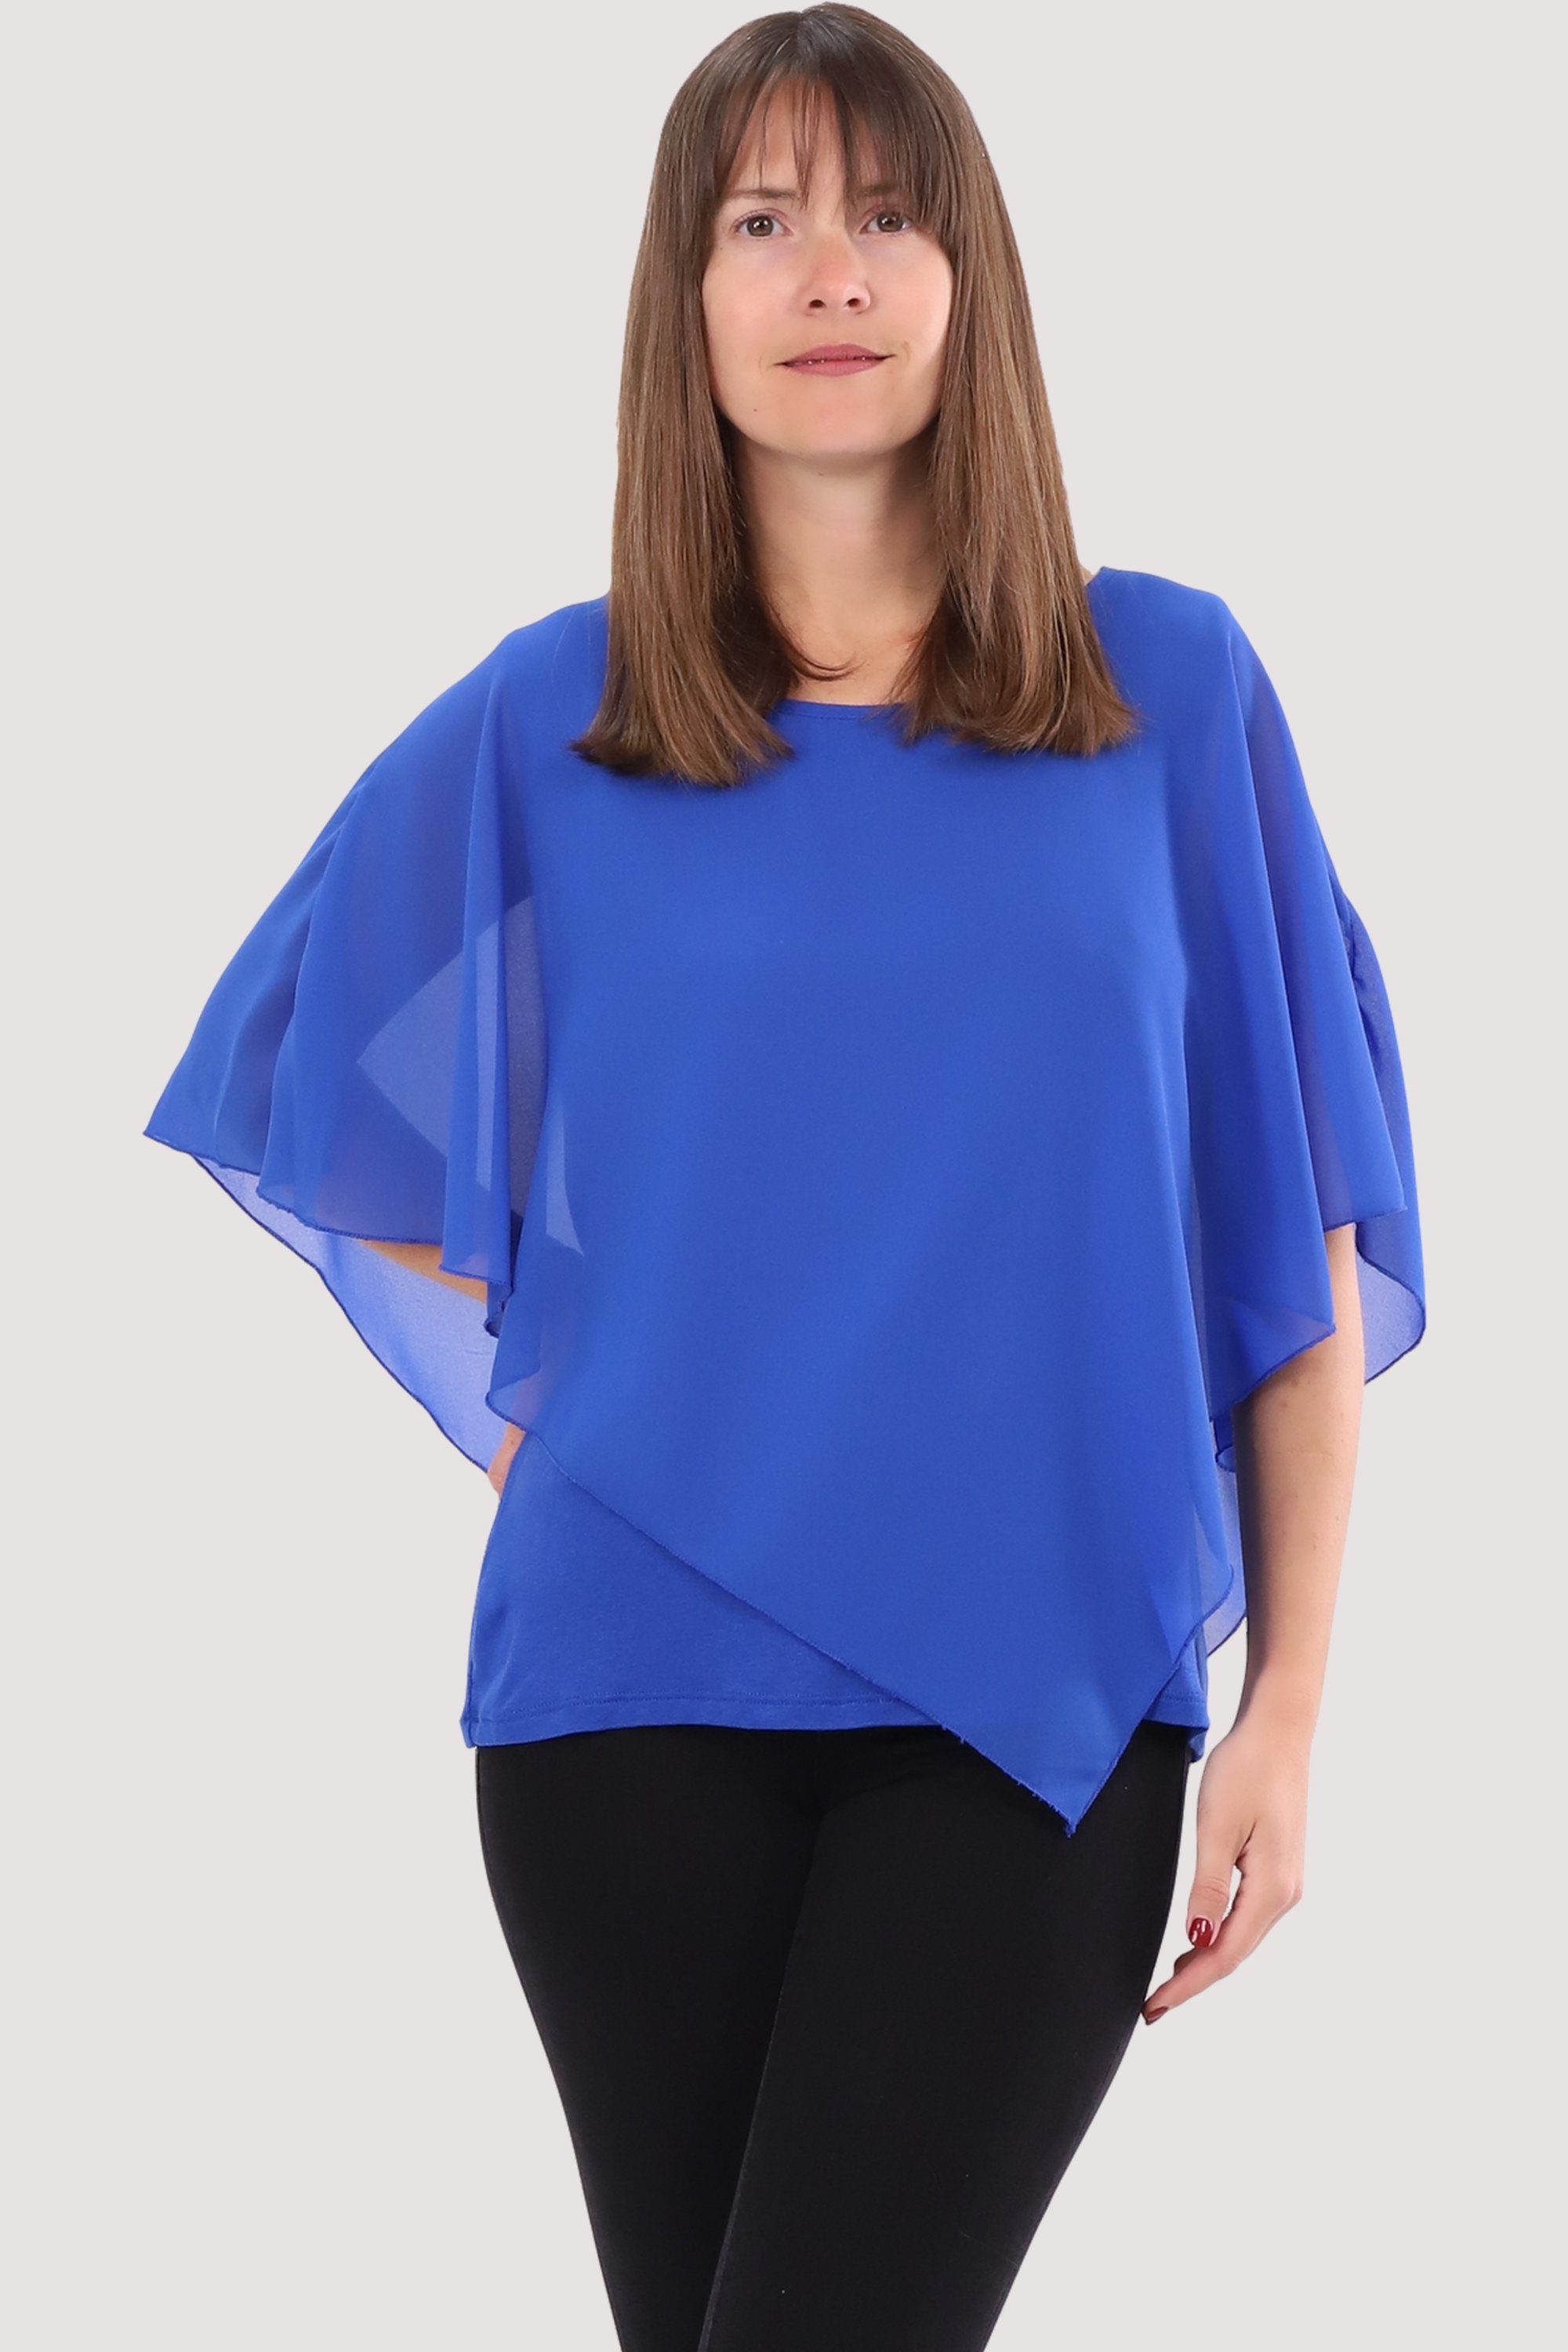 malito more than fashion Chiffonbluse 10732 Schlupfbluse Blusenshirt asymmetrisch geschnitten Einheitsgröße blau